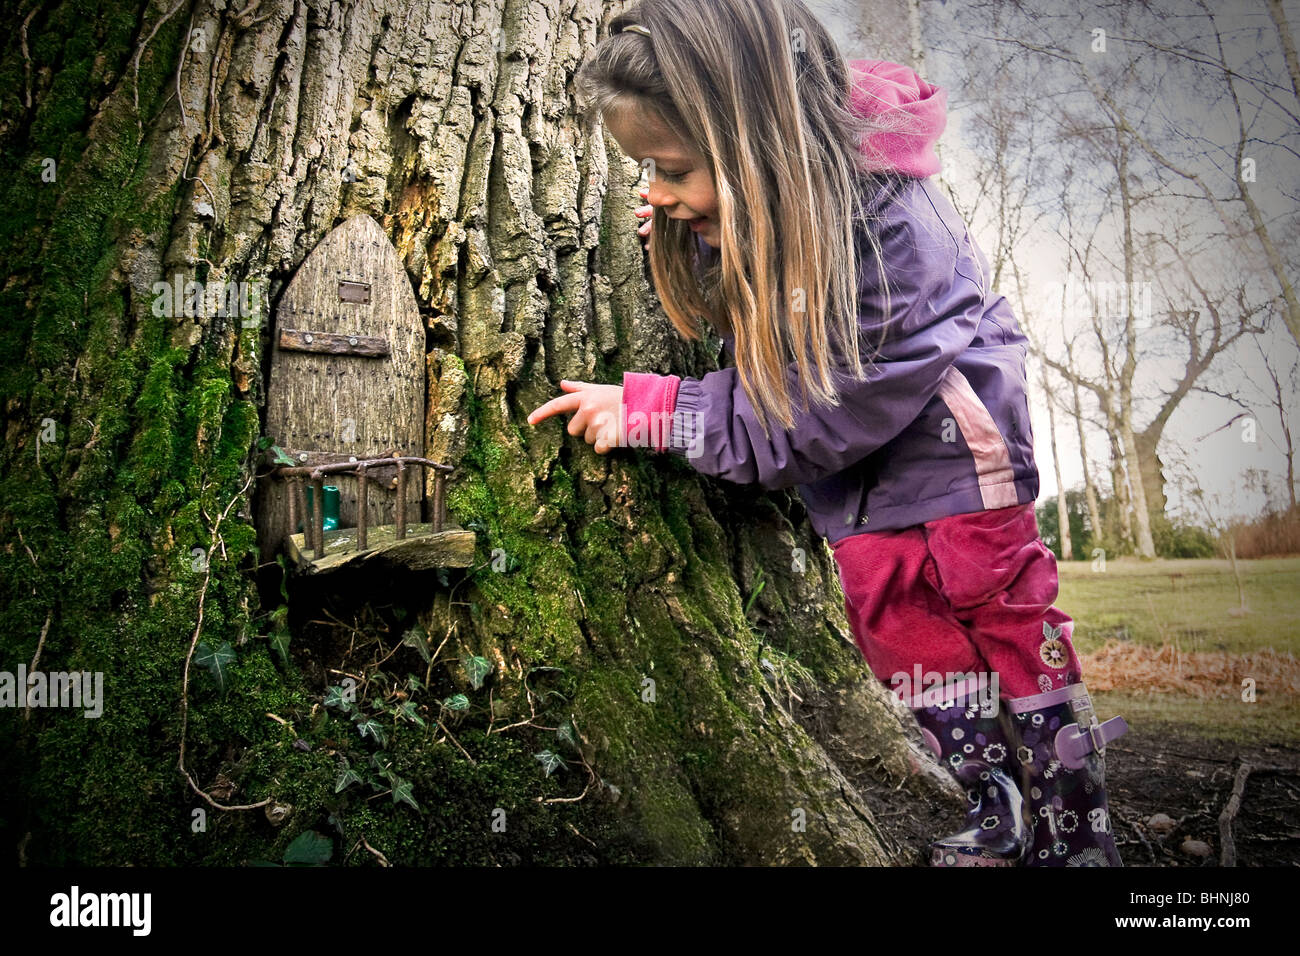 Una joven descubre un cuento de puerta en un árbol del bosque mágico Foto de stock